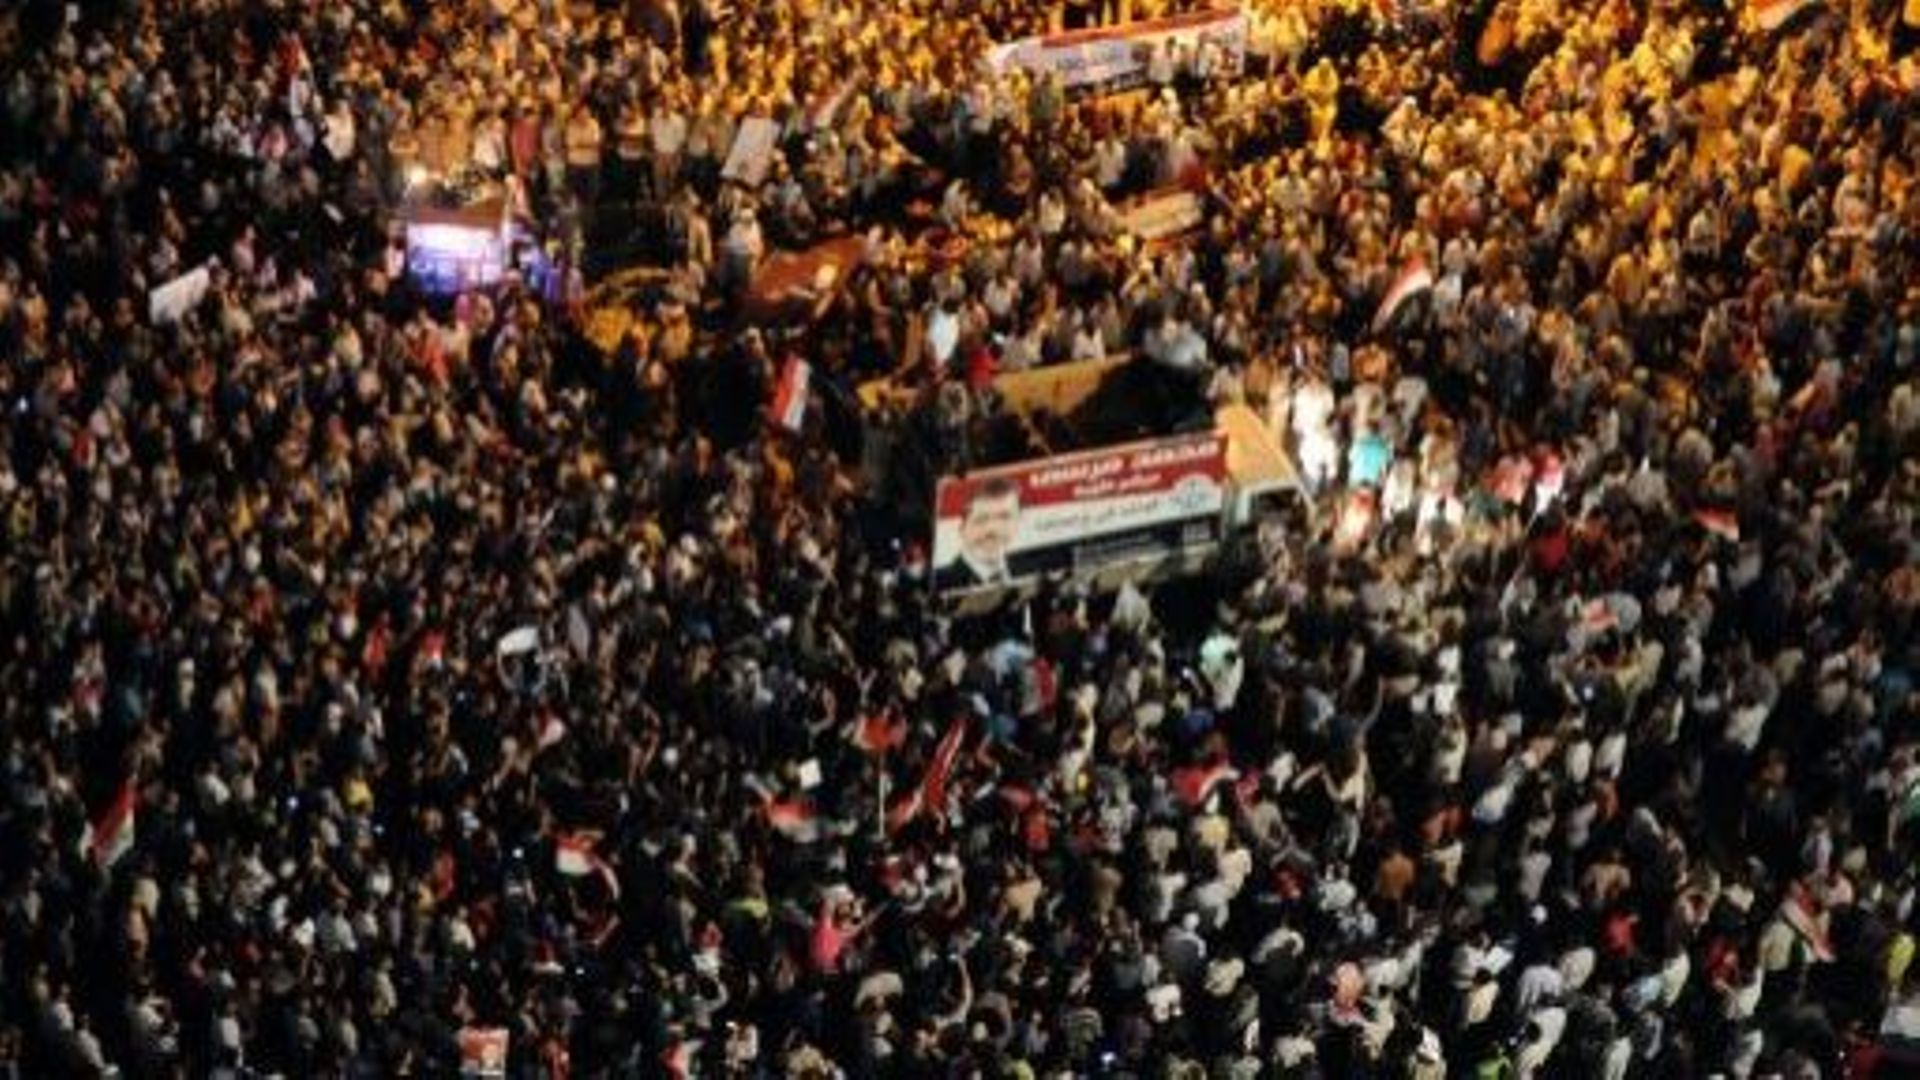 Des milliers d'Egyptiens se rassemblent sur la place Tahrir au Caire pour soutenir le président Morsi, le 10 juillet 2012